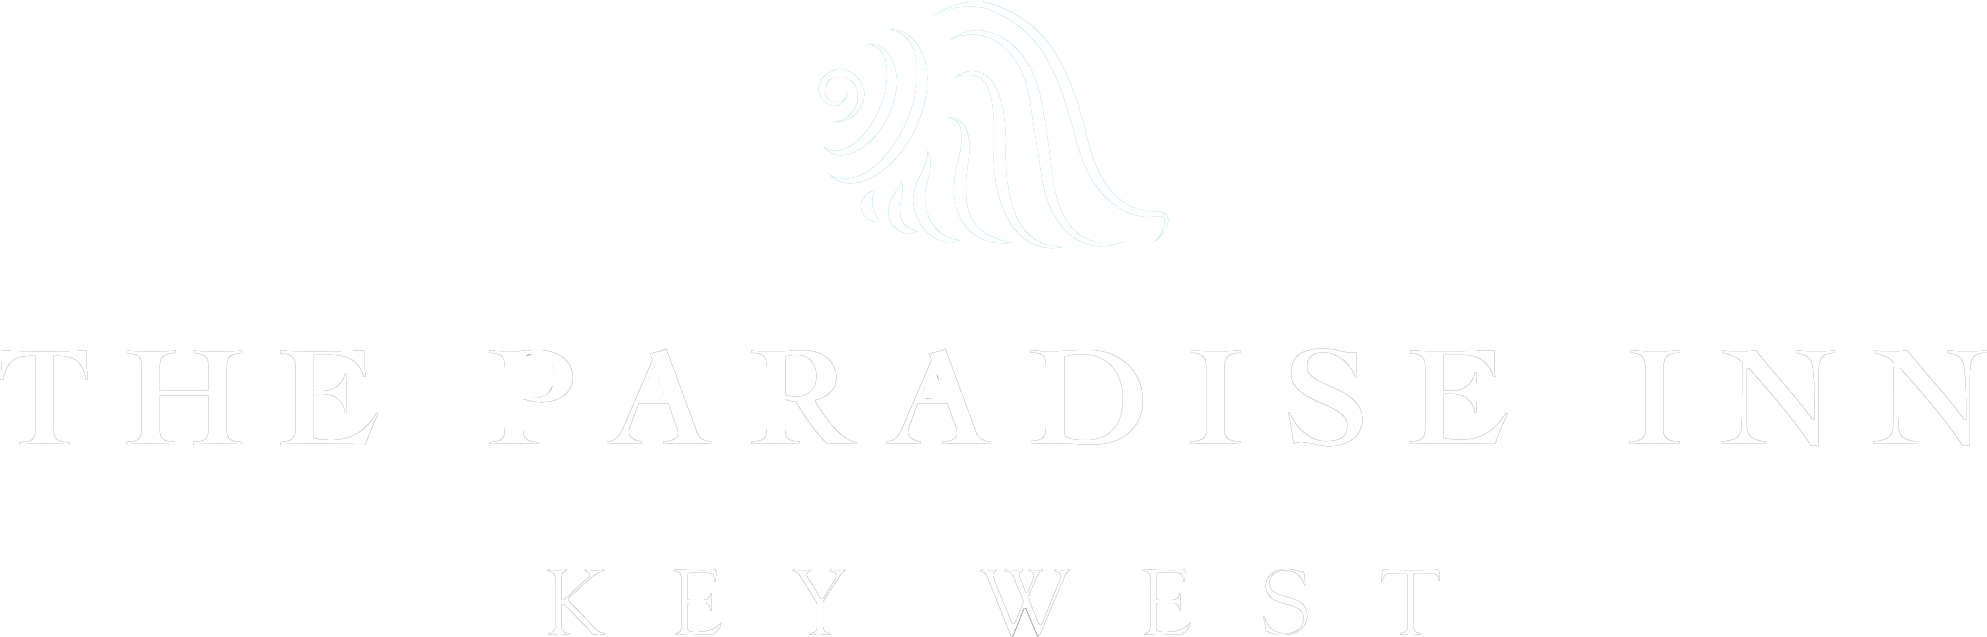 The Paradise Inn logo.